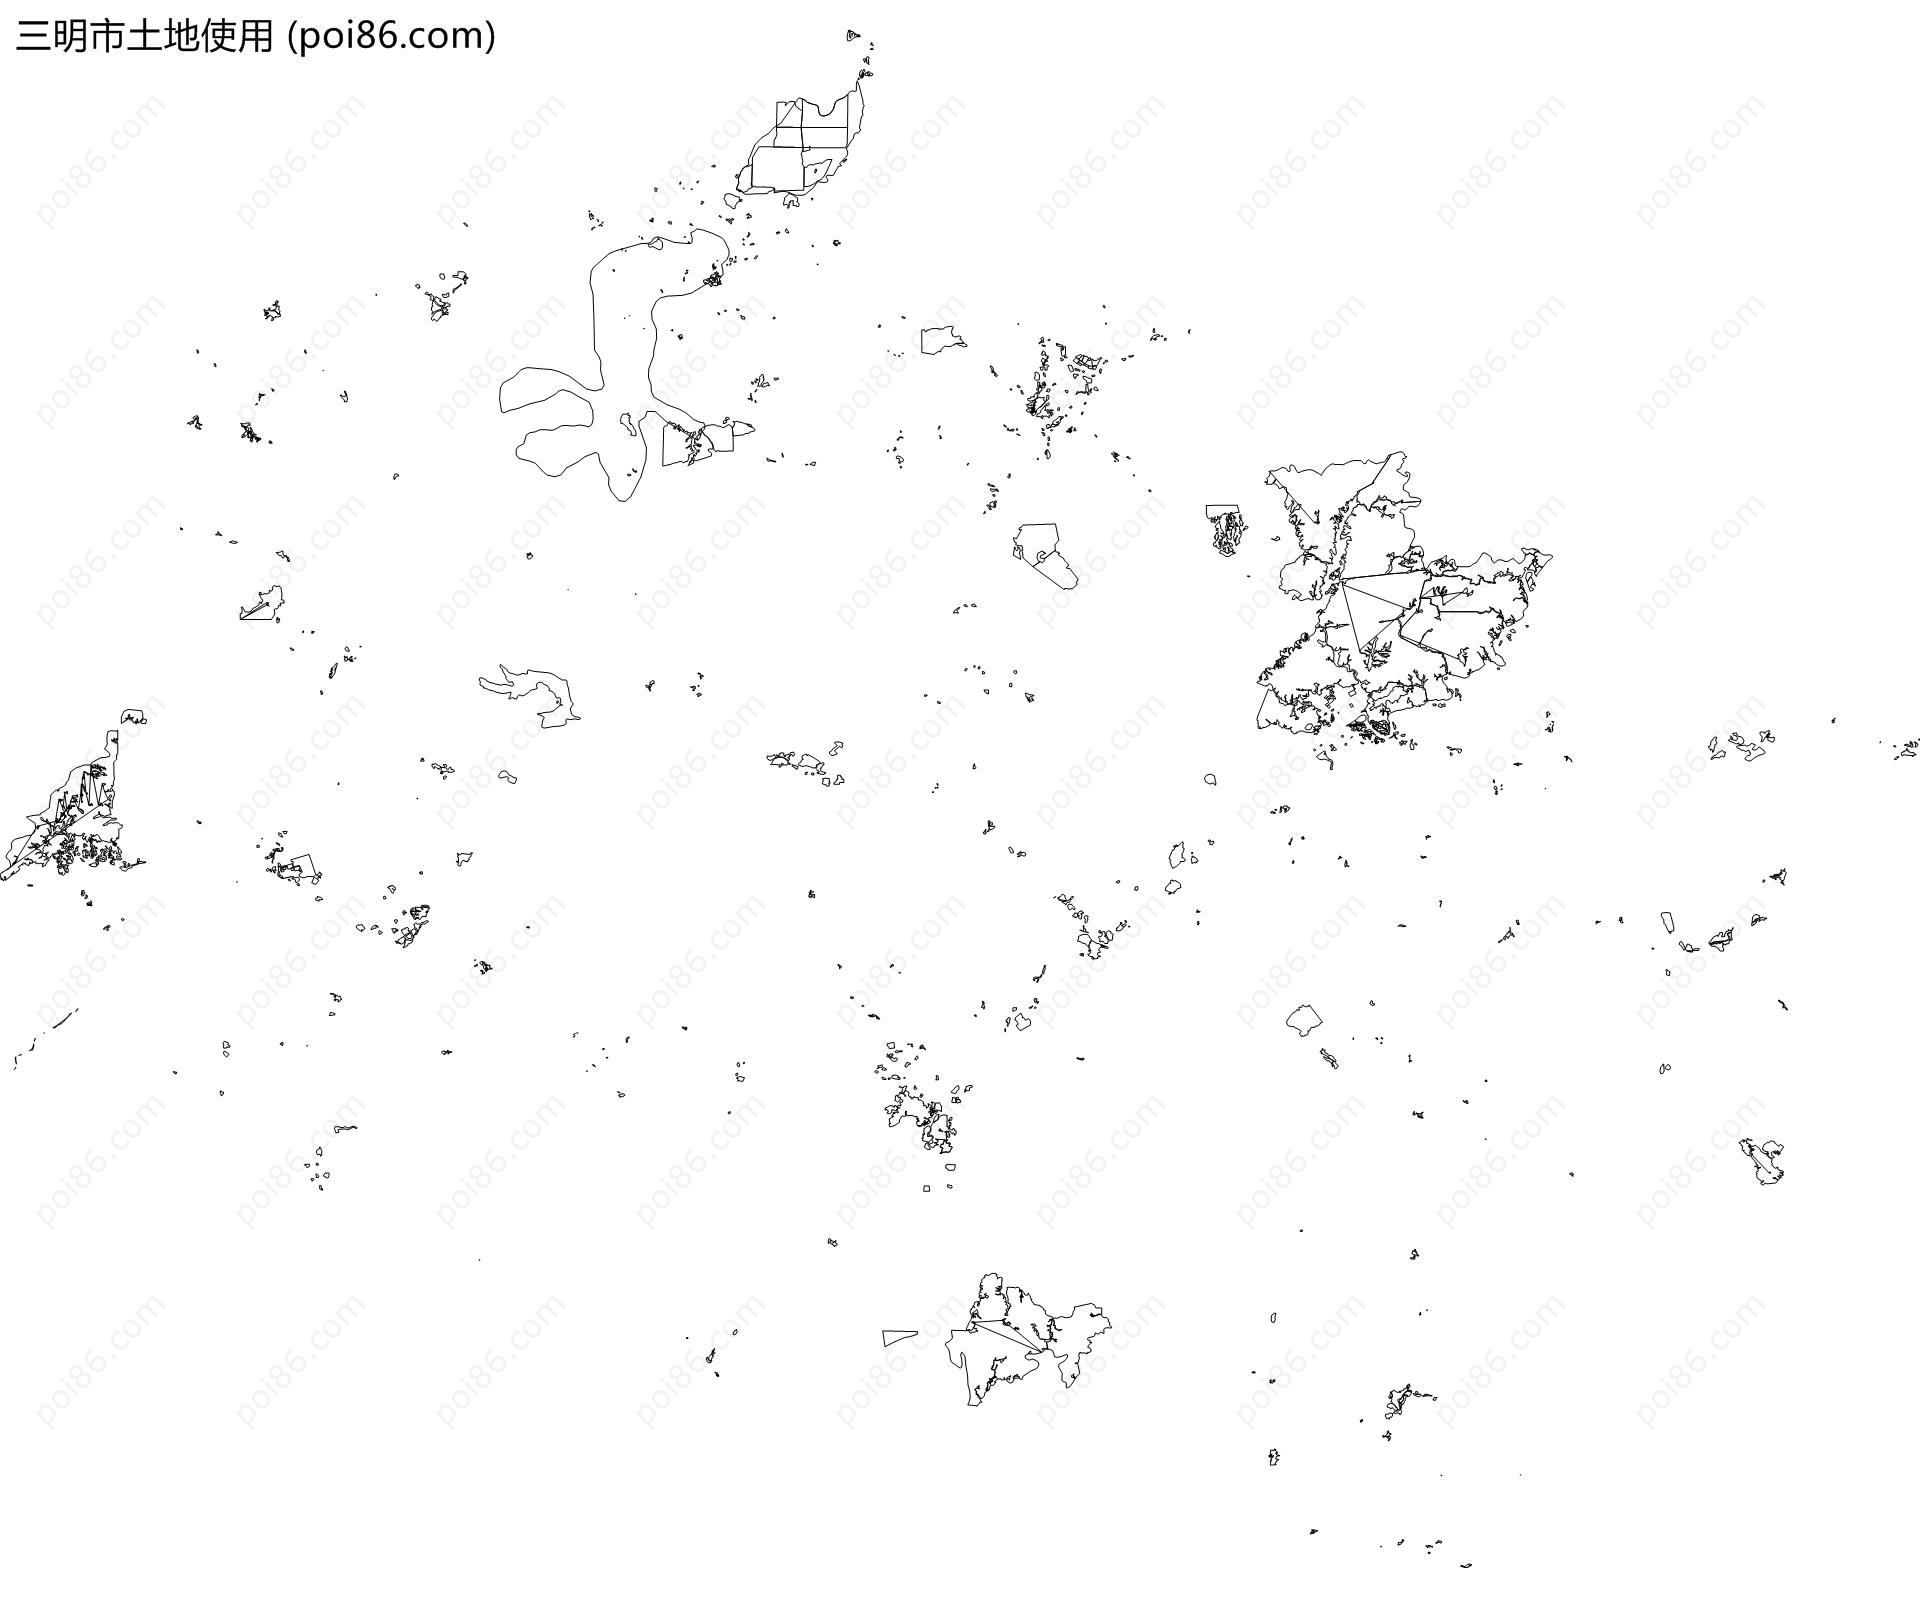 三明市土地使用地图